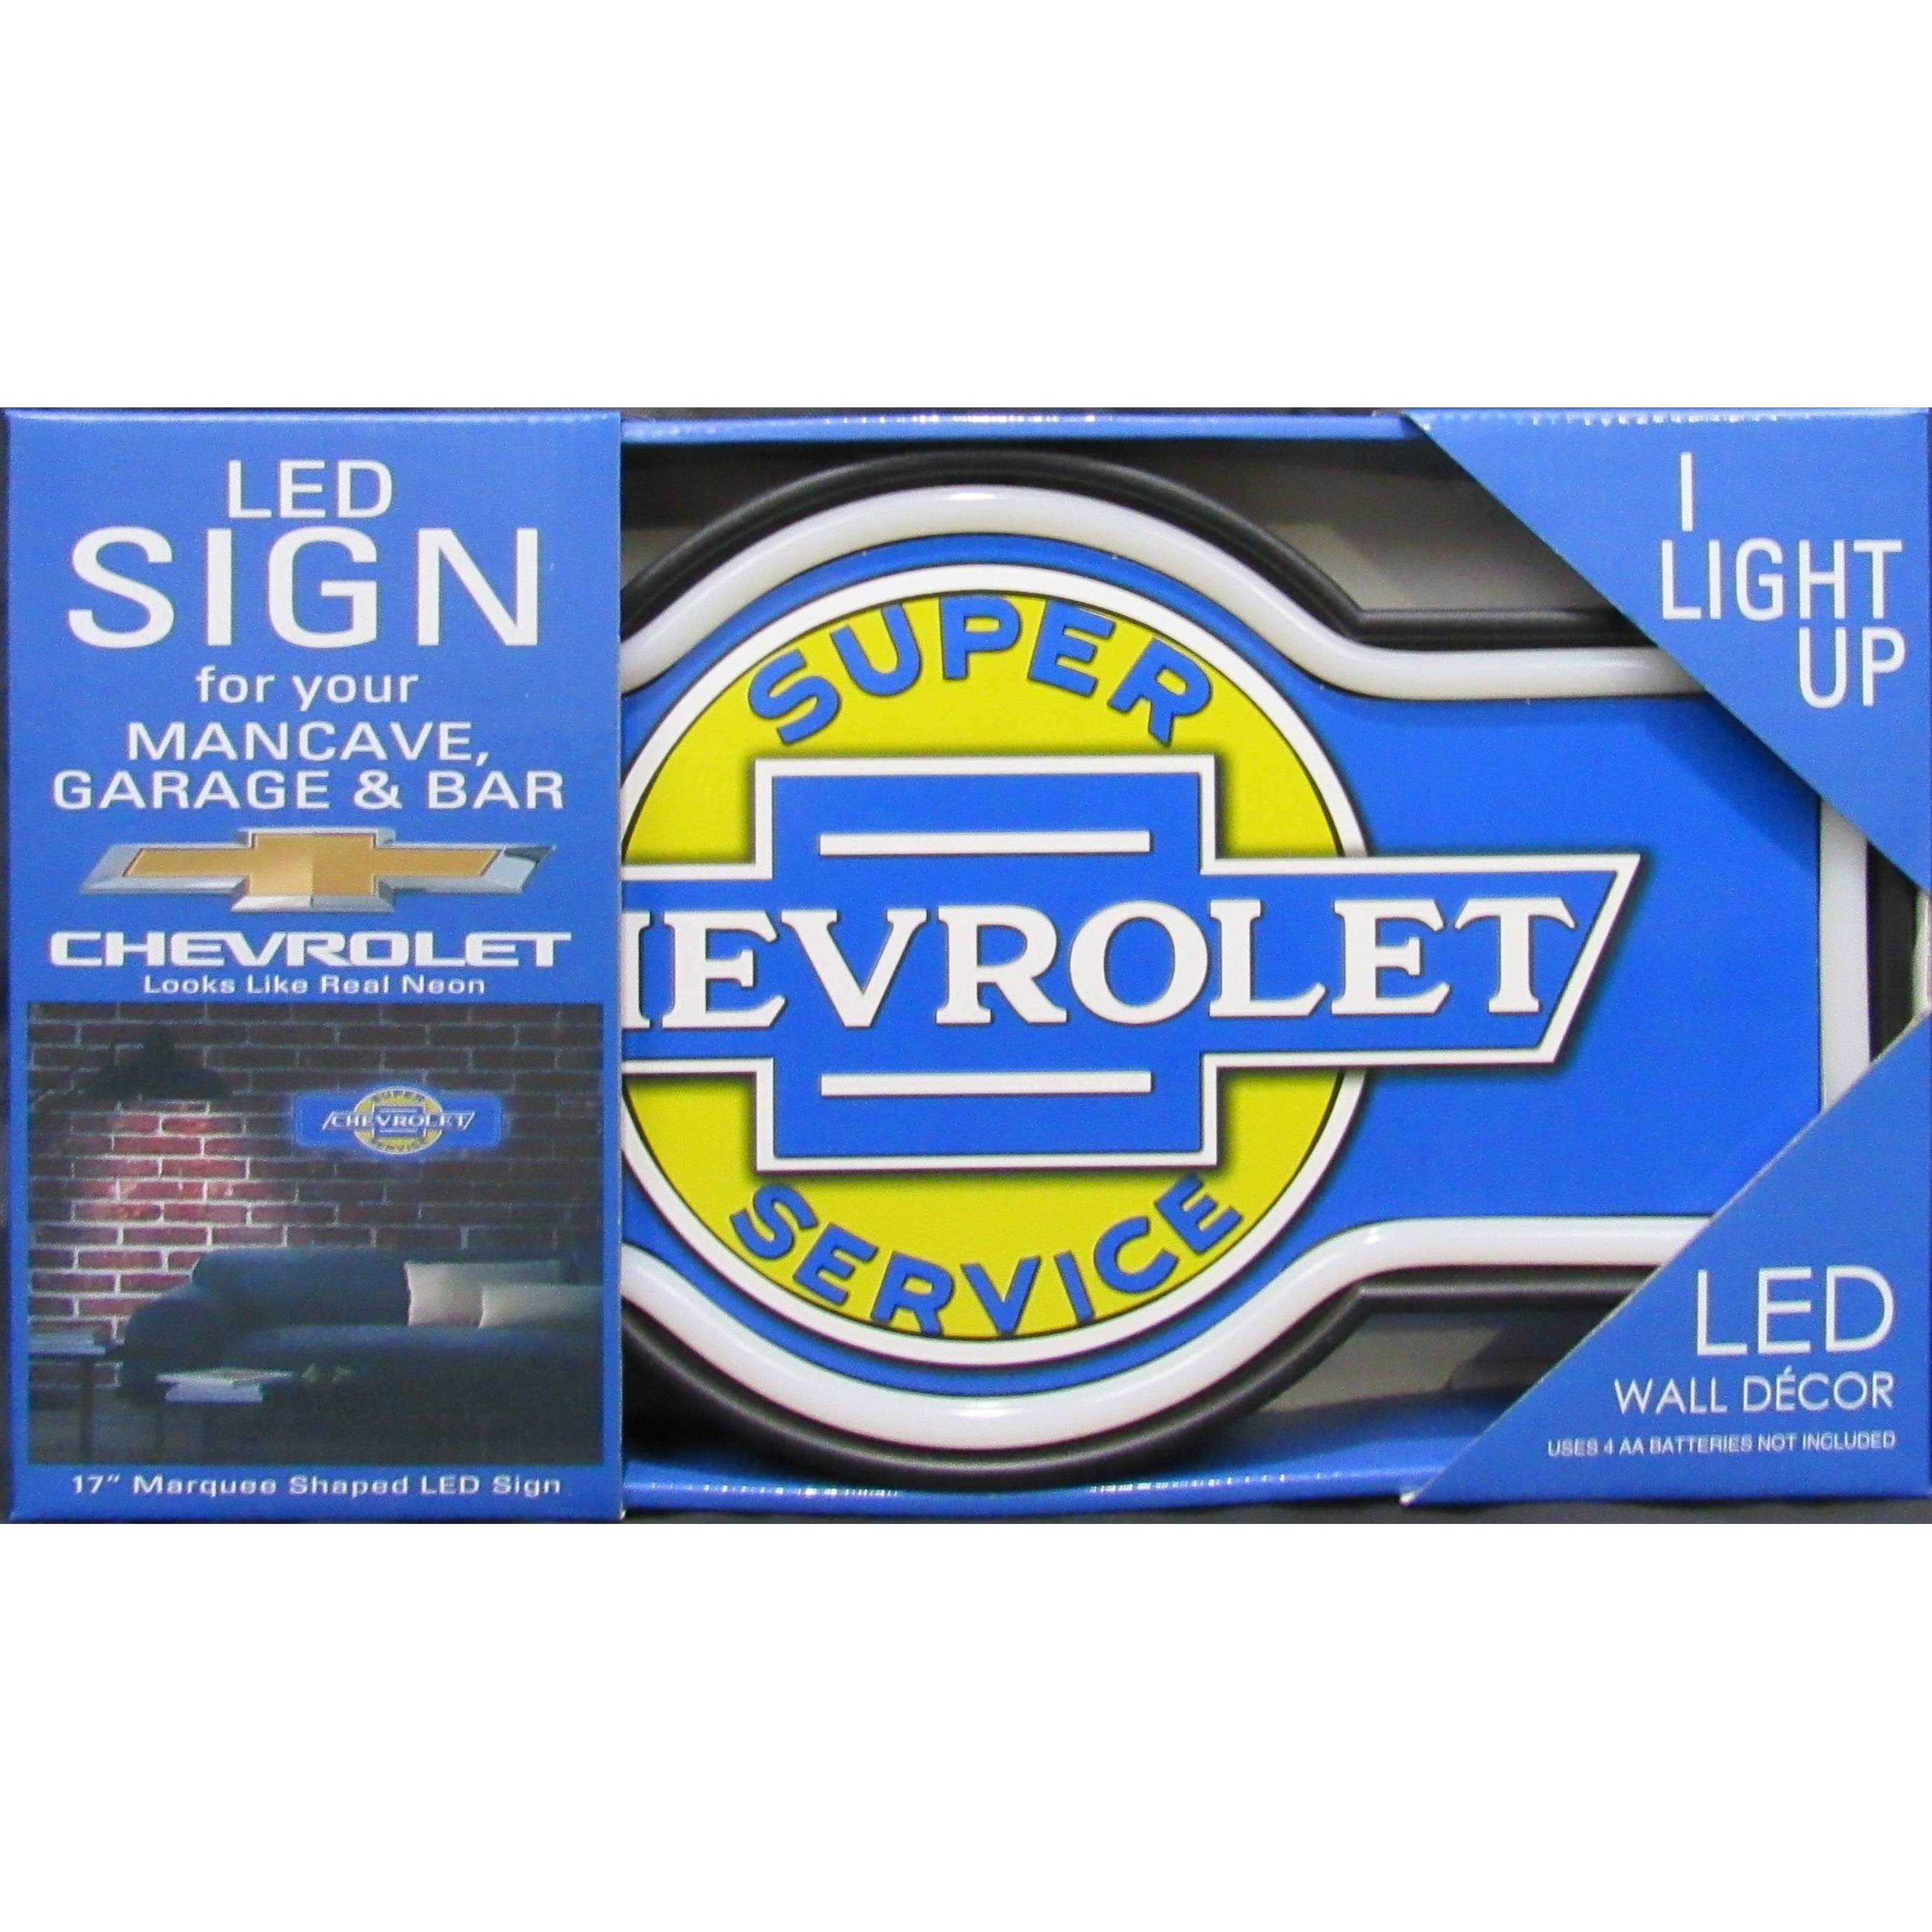 Super Chevrolet Service Backlit Led Neon Lighted Sign 15"x15" 